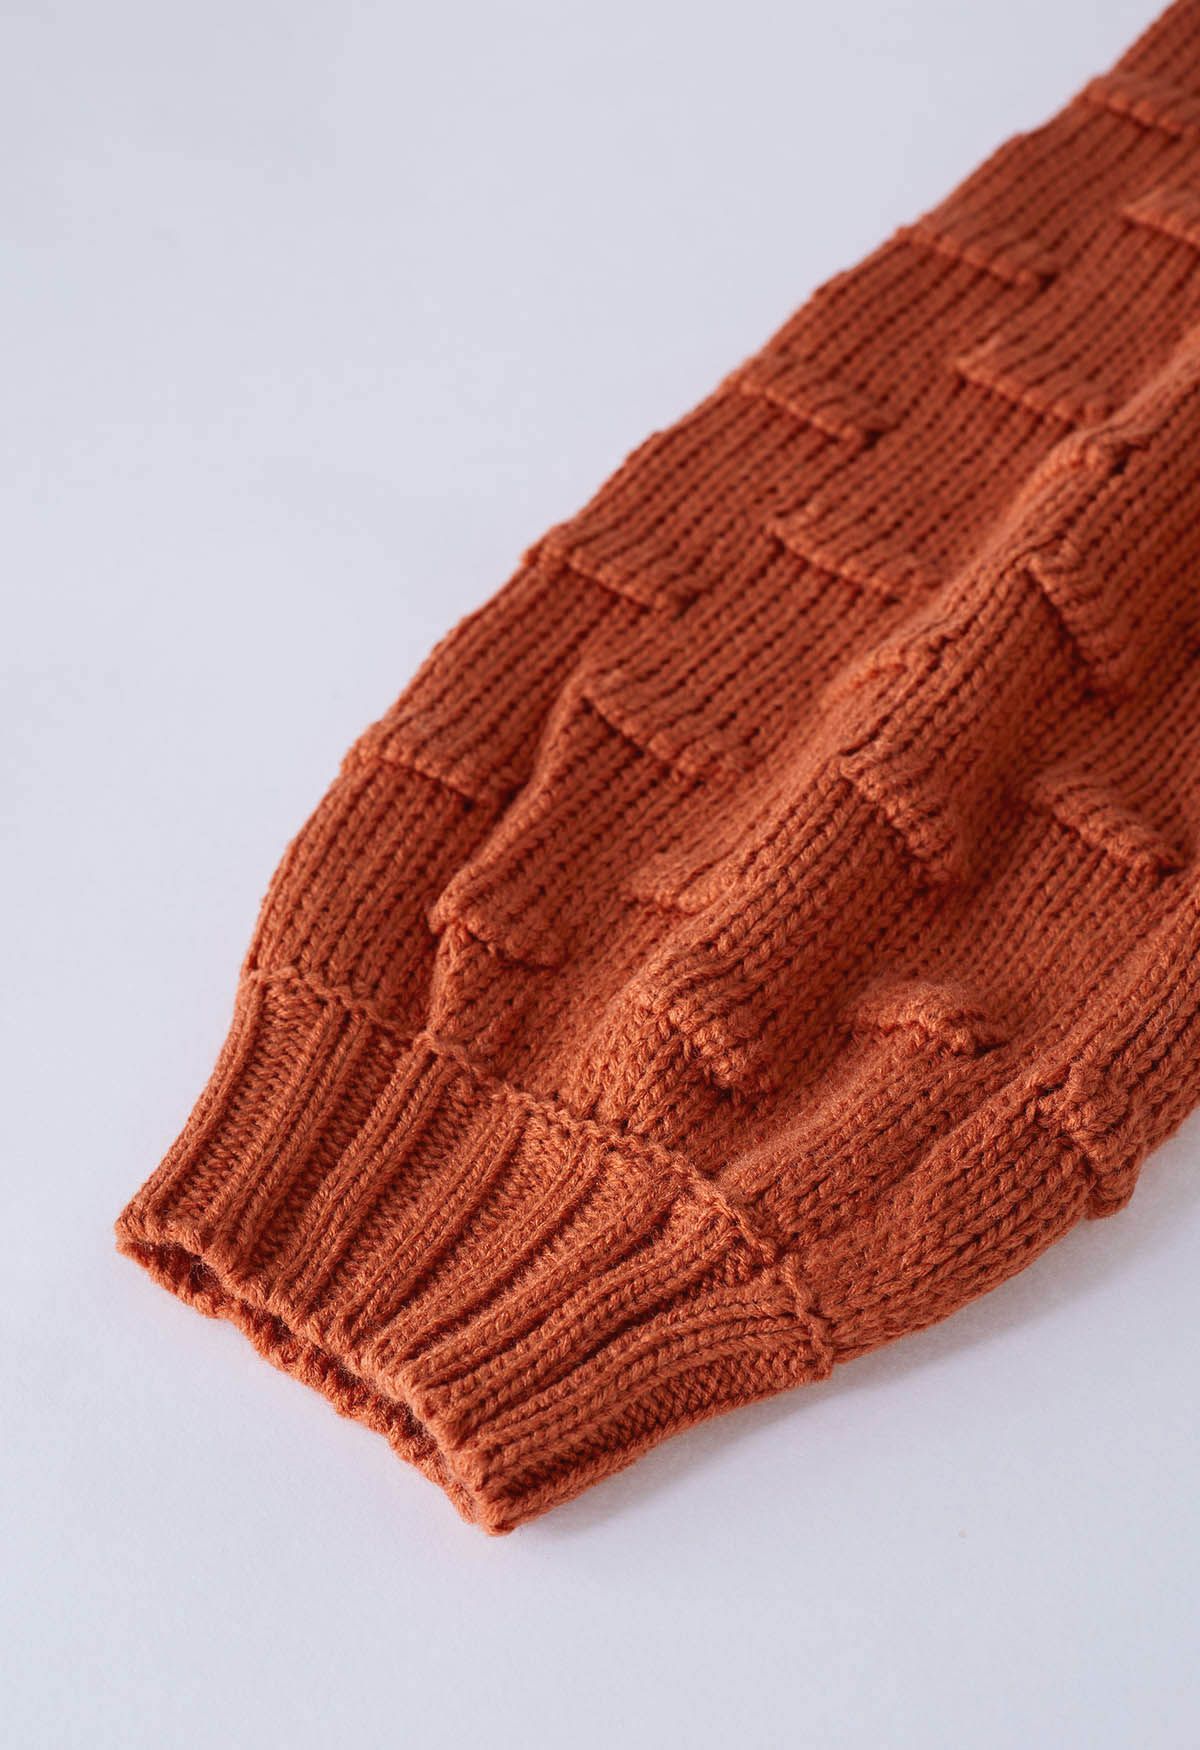 Suéter corto con mangas abullonadas y puntos juguetones en color calabaza